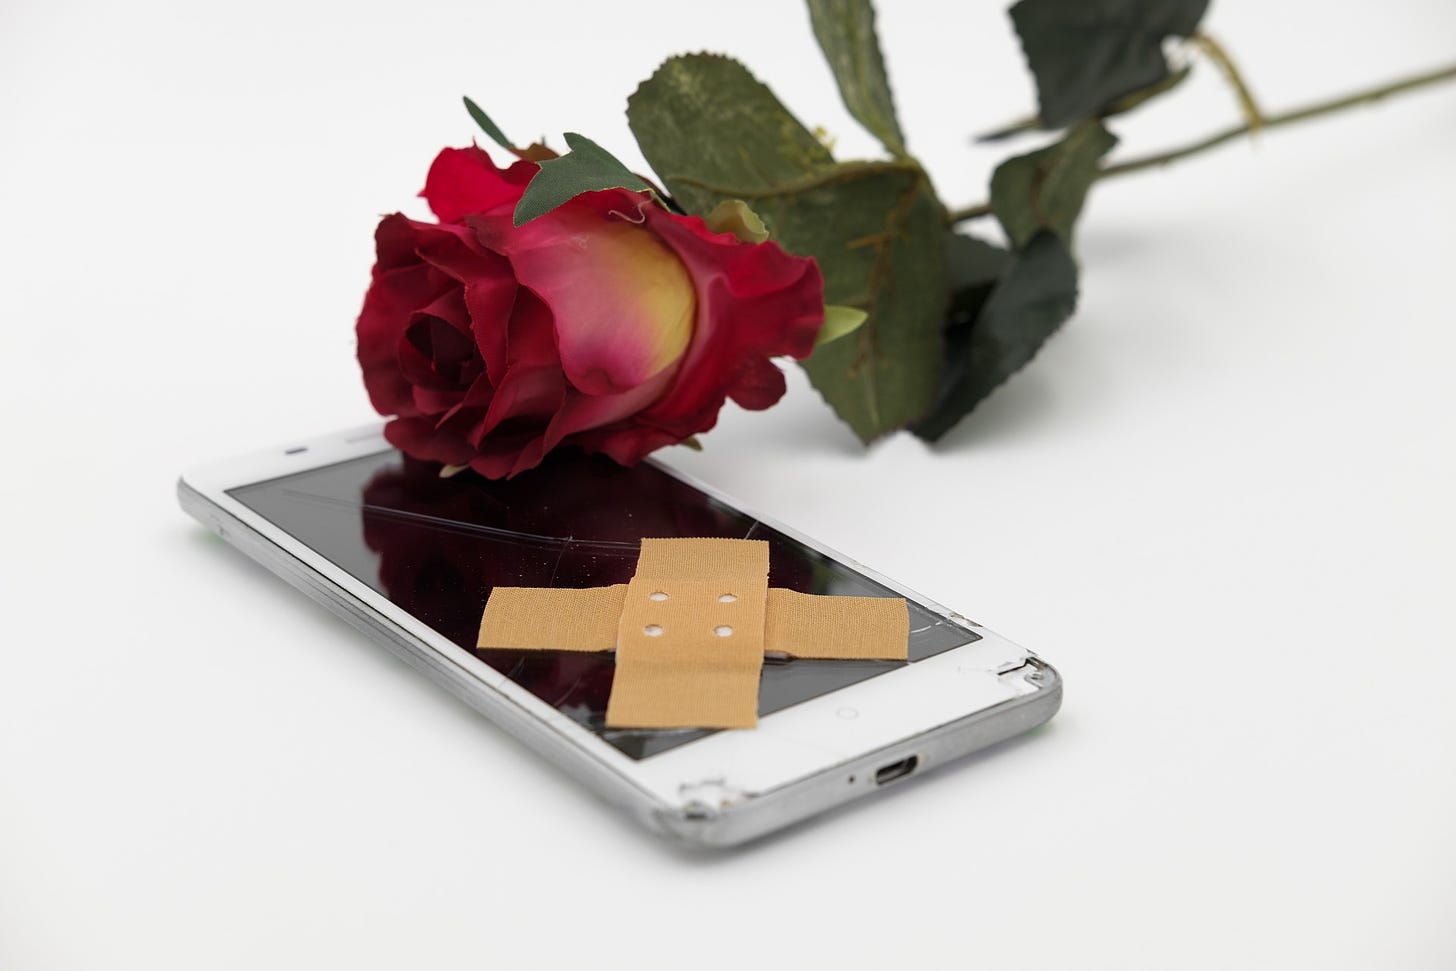 immagine di un cellulare con lo schermo rotto e una rosa sopra